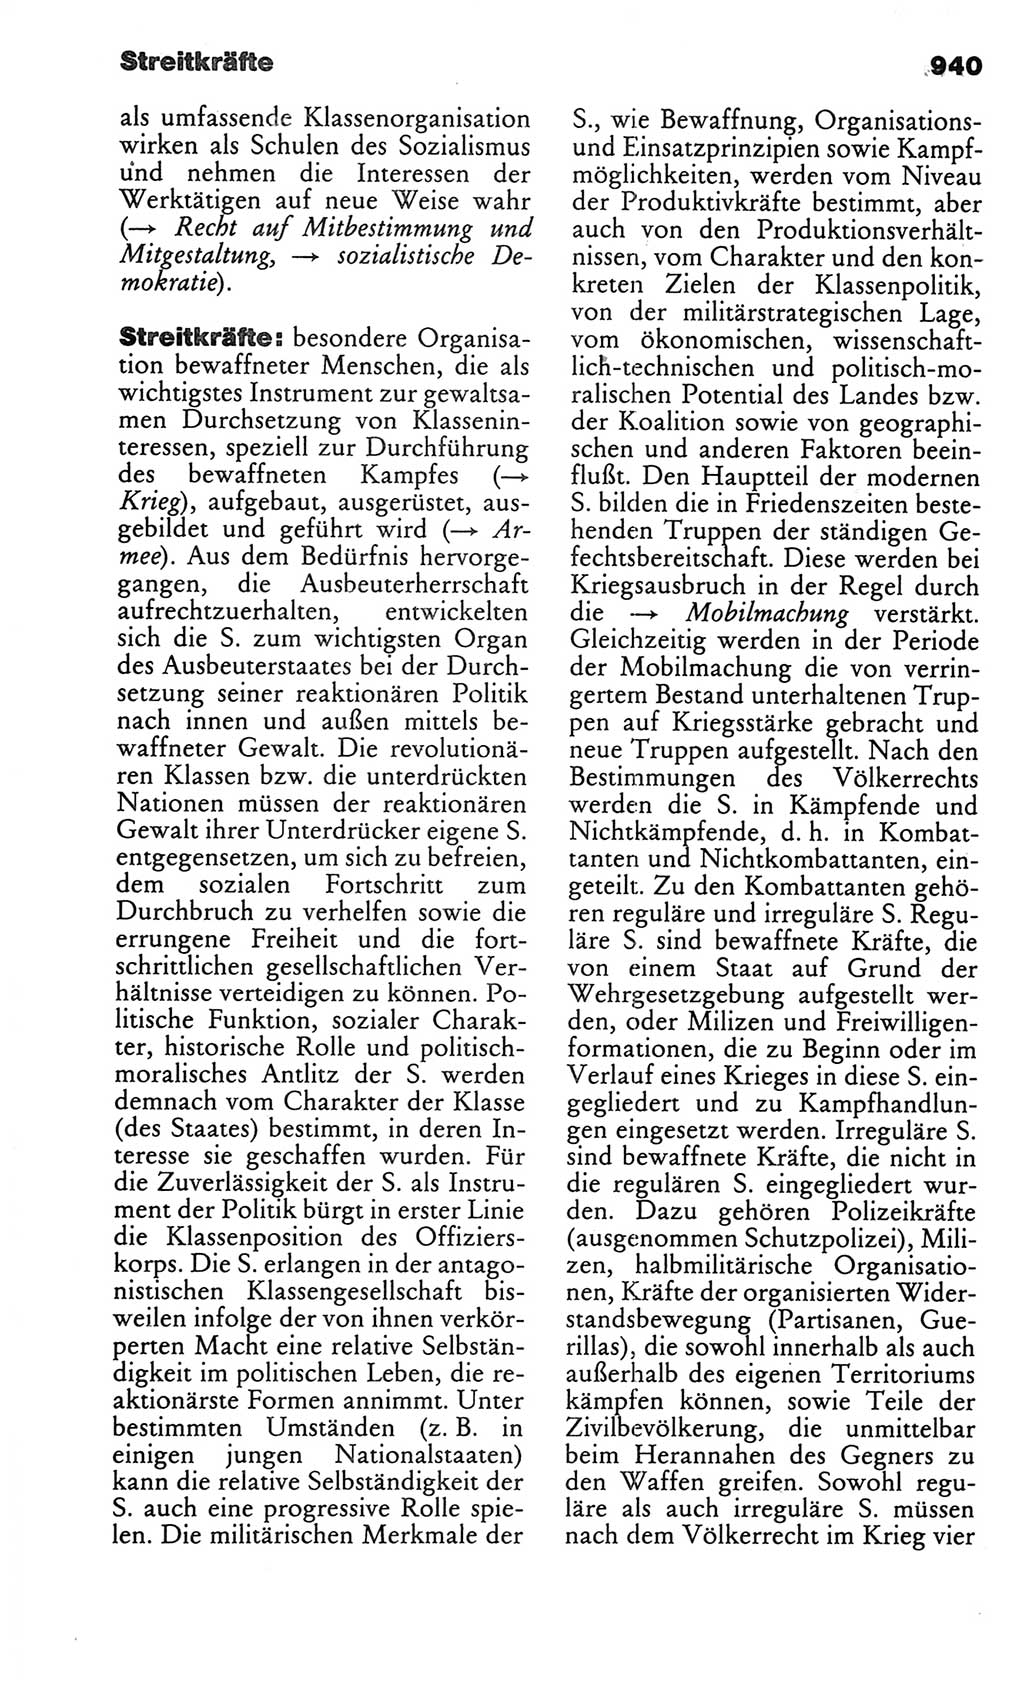 Kleines politisches Wörterbuch [Deutsche Demokratische Republik (DDR)] 1986, Seite 940 (Kl. pol. Wb. DDR 1986, S. 940)